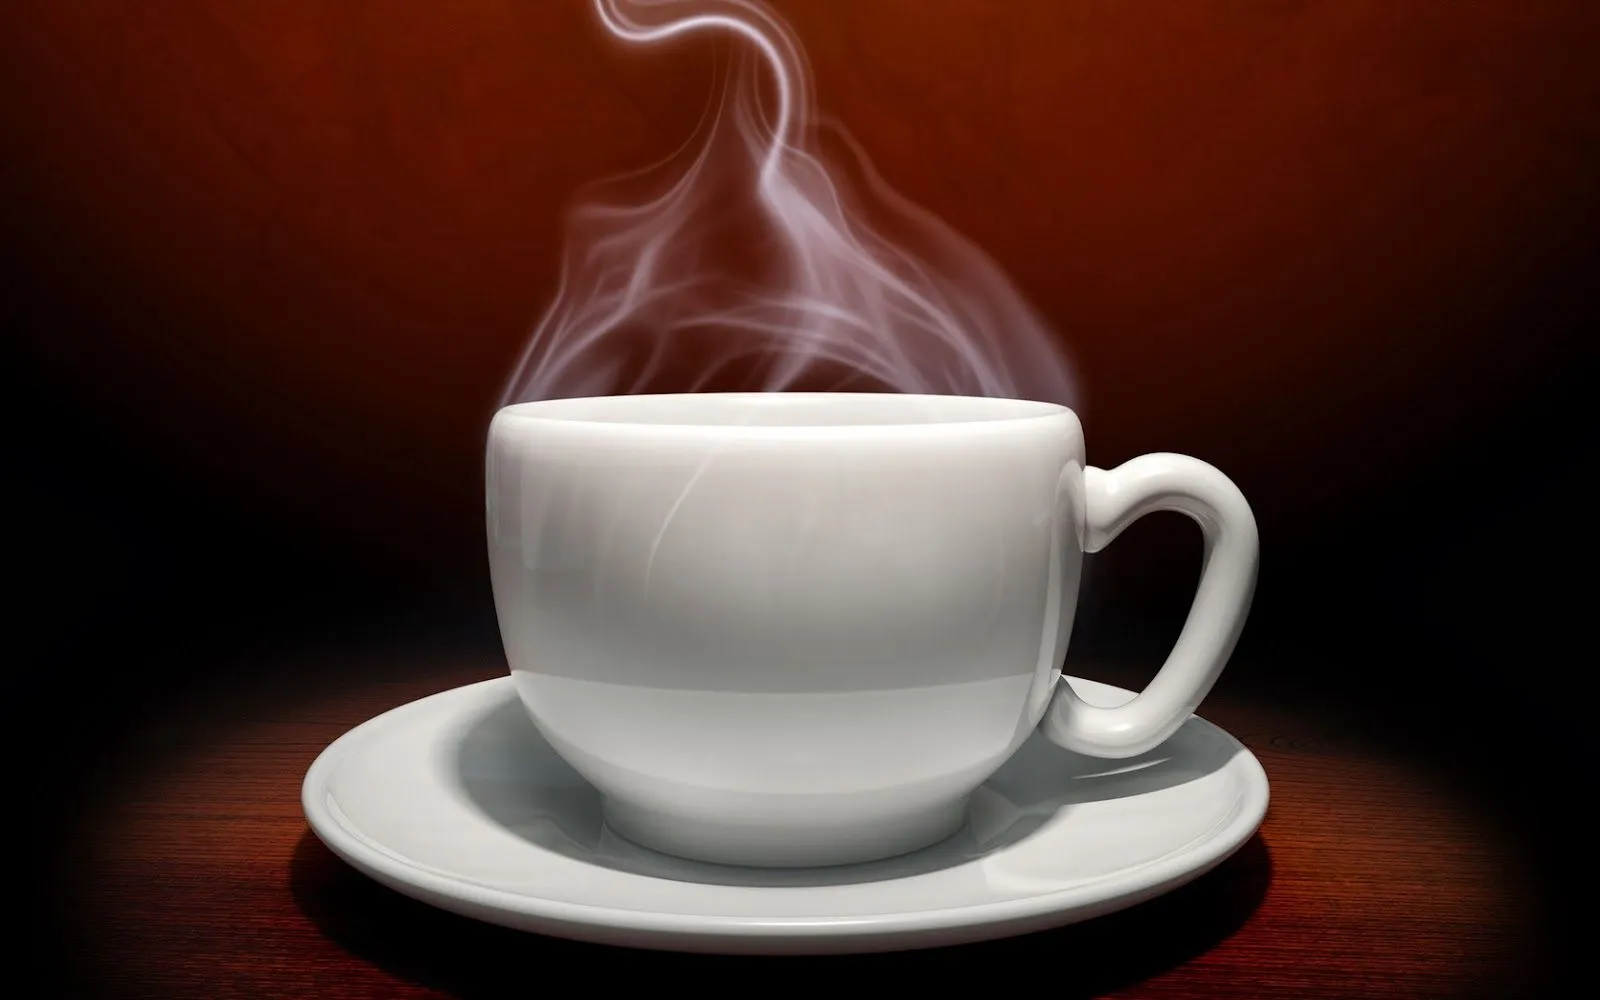 Imagenes • Imagenes de tazas de cafe bonitas